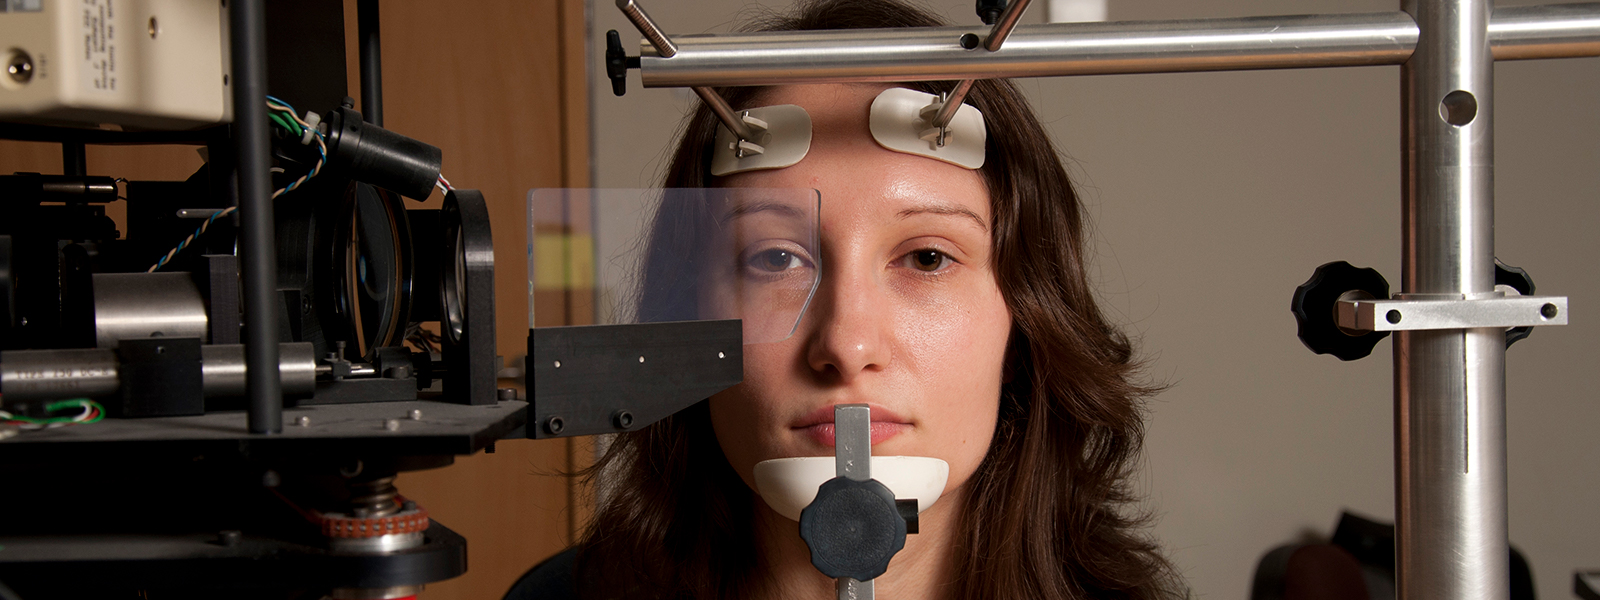 Student using eye-tracking equipment